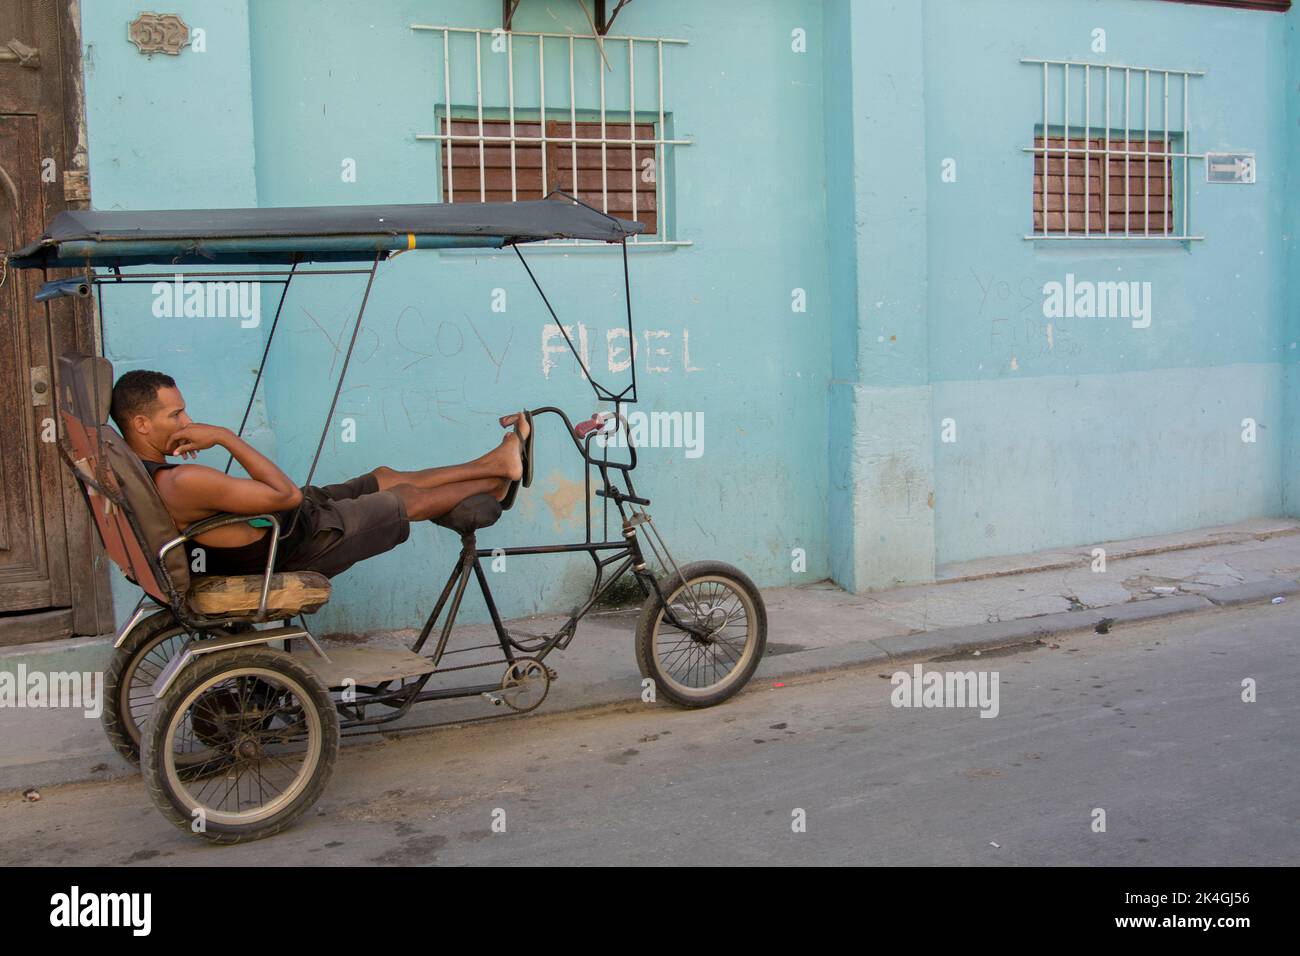 Un giovane che riposa sulla sua bicicletta di fronte a una casa con un omaggio al defunto presidente cubano Fidel Castro scritto sul muro. Foto Stock